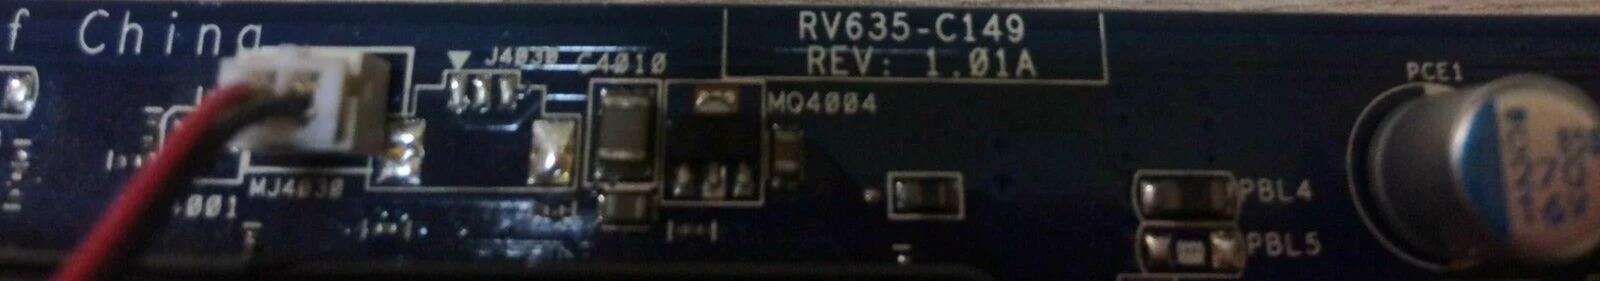 VGA card RV635-C149 rev 1.01A, 08G17016841 HP P/N 5189-3945